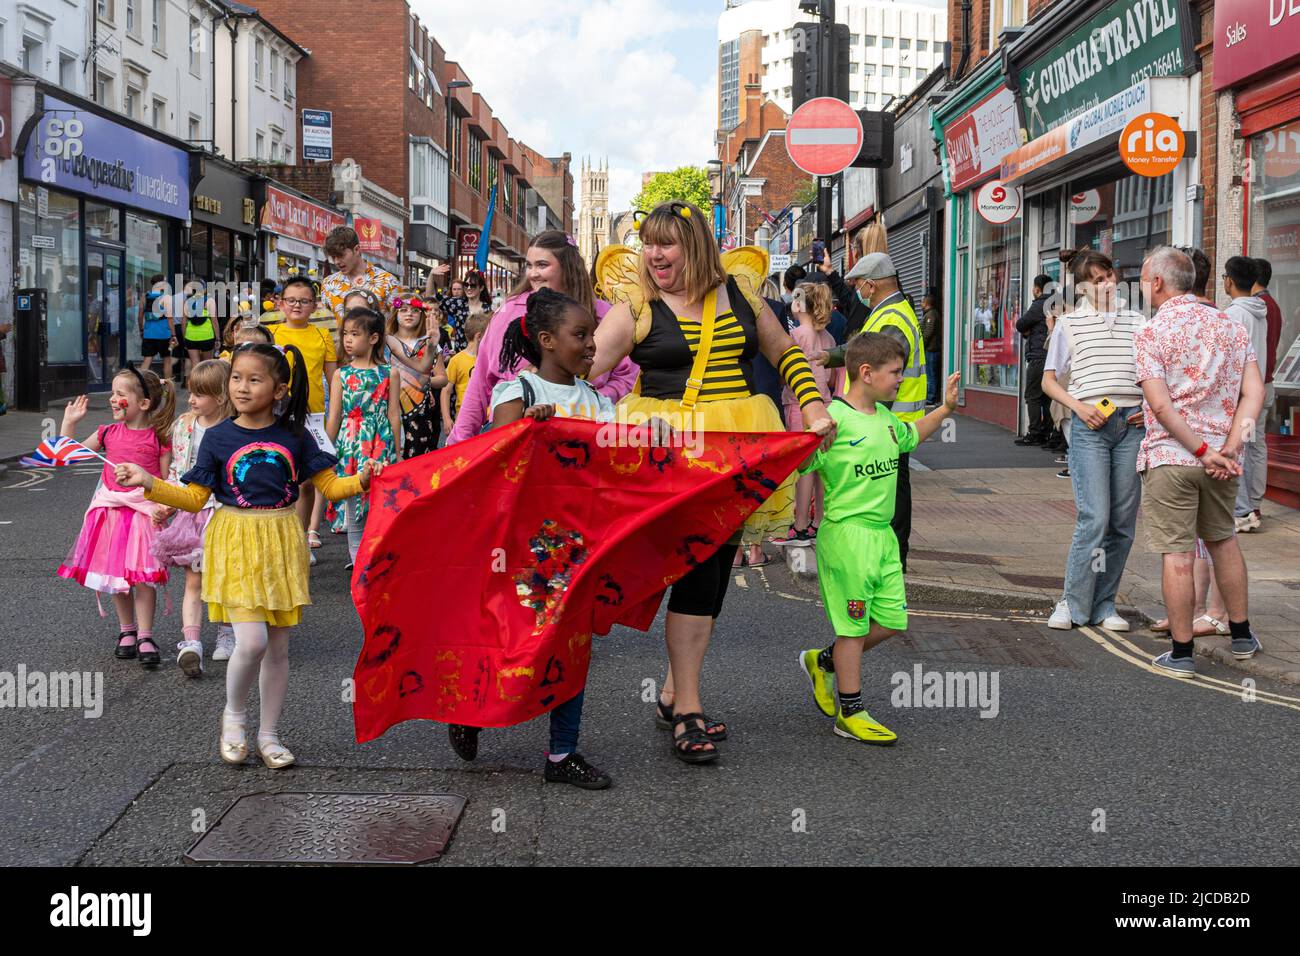 Le Grand Parade à la fête de Victoria, un événement annuel à Aldershot, Hampshire, Angleterre, Royaume-Uni. Enfants en costumes à thème fleurs et abeilles. Banque D'Images